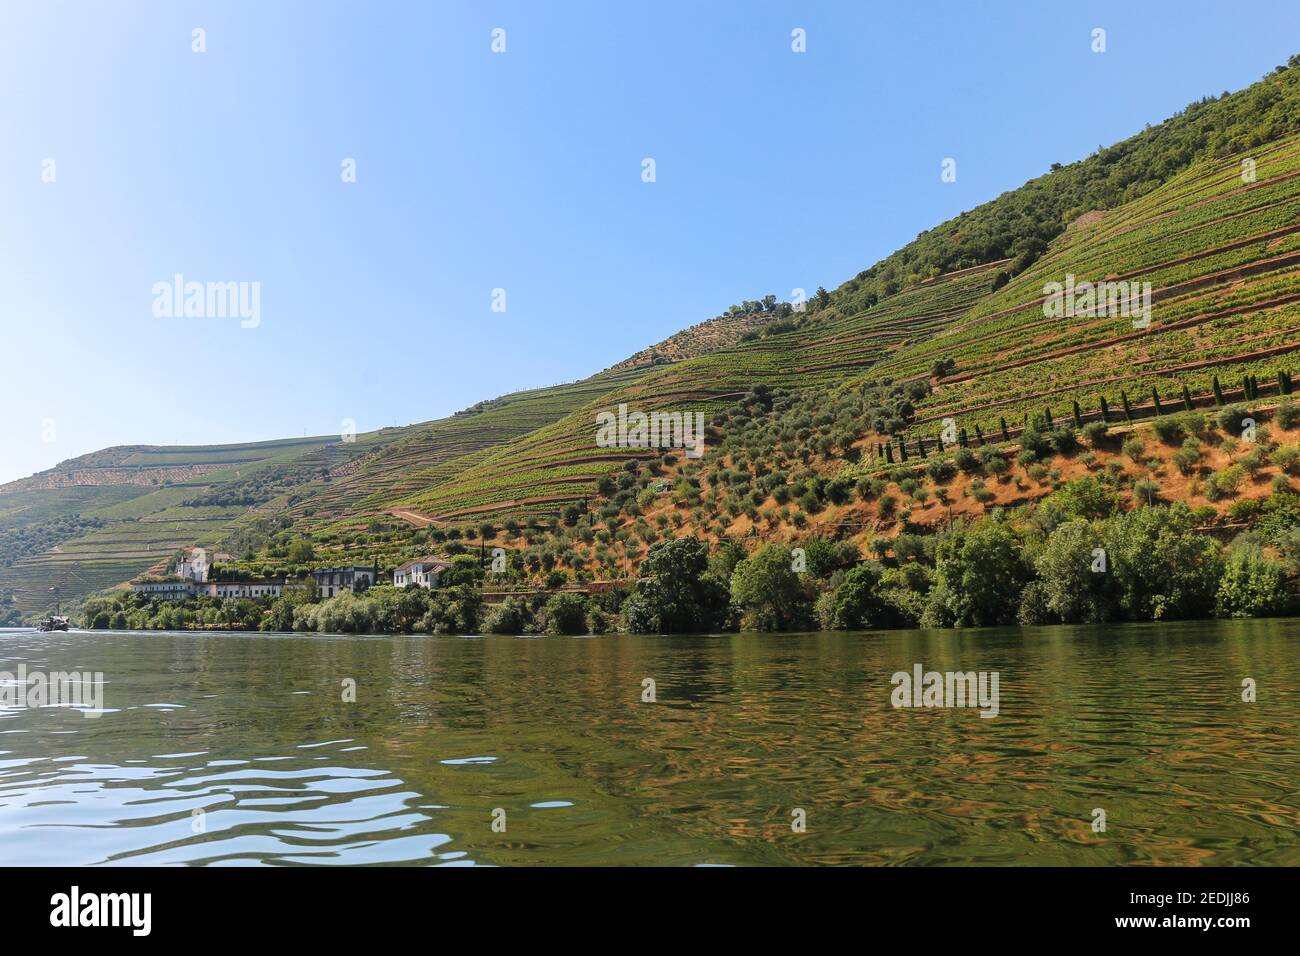 Vista dalla valle del Douro ai vigneti sulle colline, che producono il famoso vino di porto, Porto, Portogallo Foto Stock